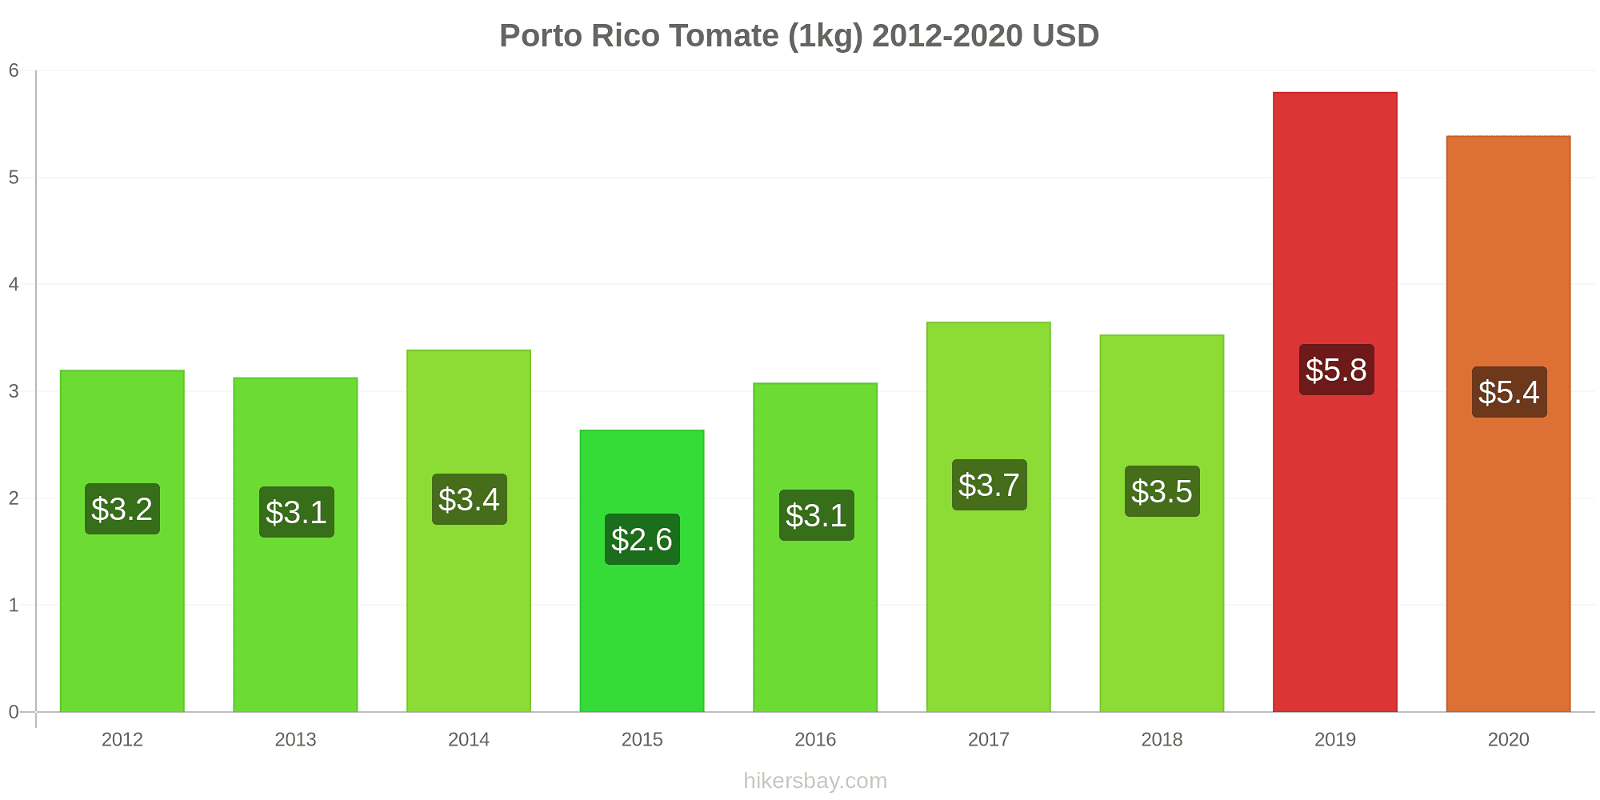 Porto Rico variação de preço Tomate (1kg) hikersbay.com